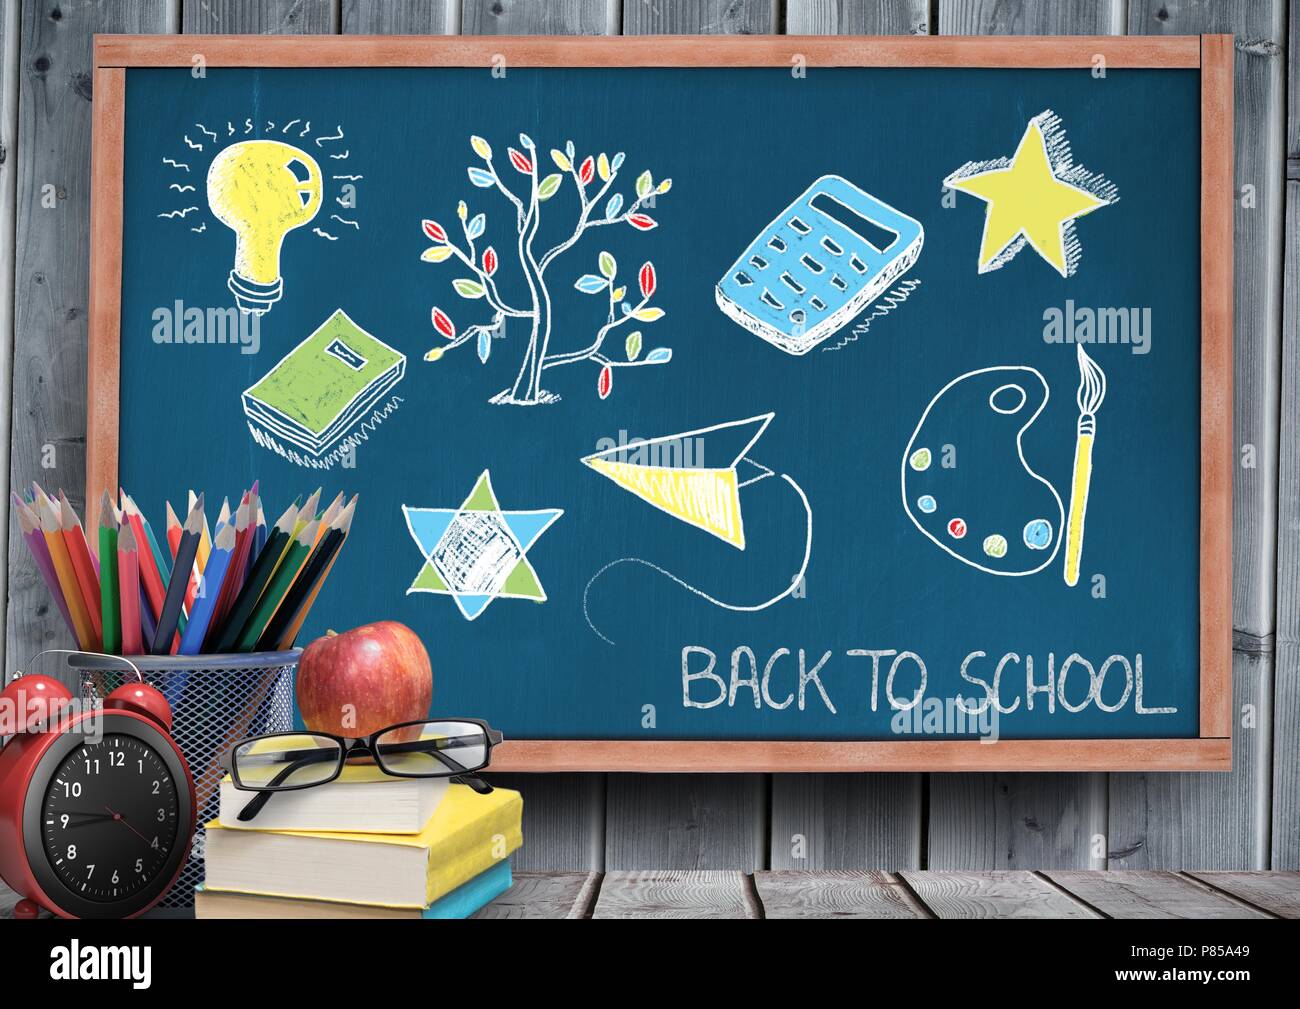 Back to school education drawings on blackboard for school Stock Photo